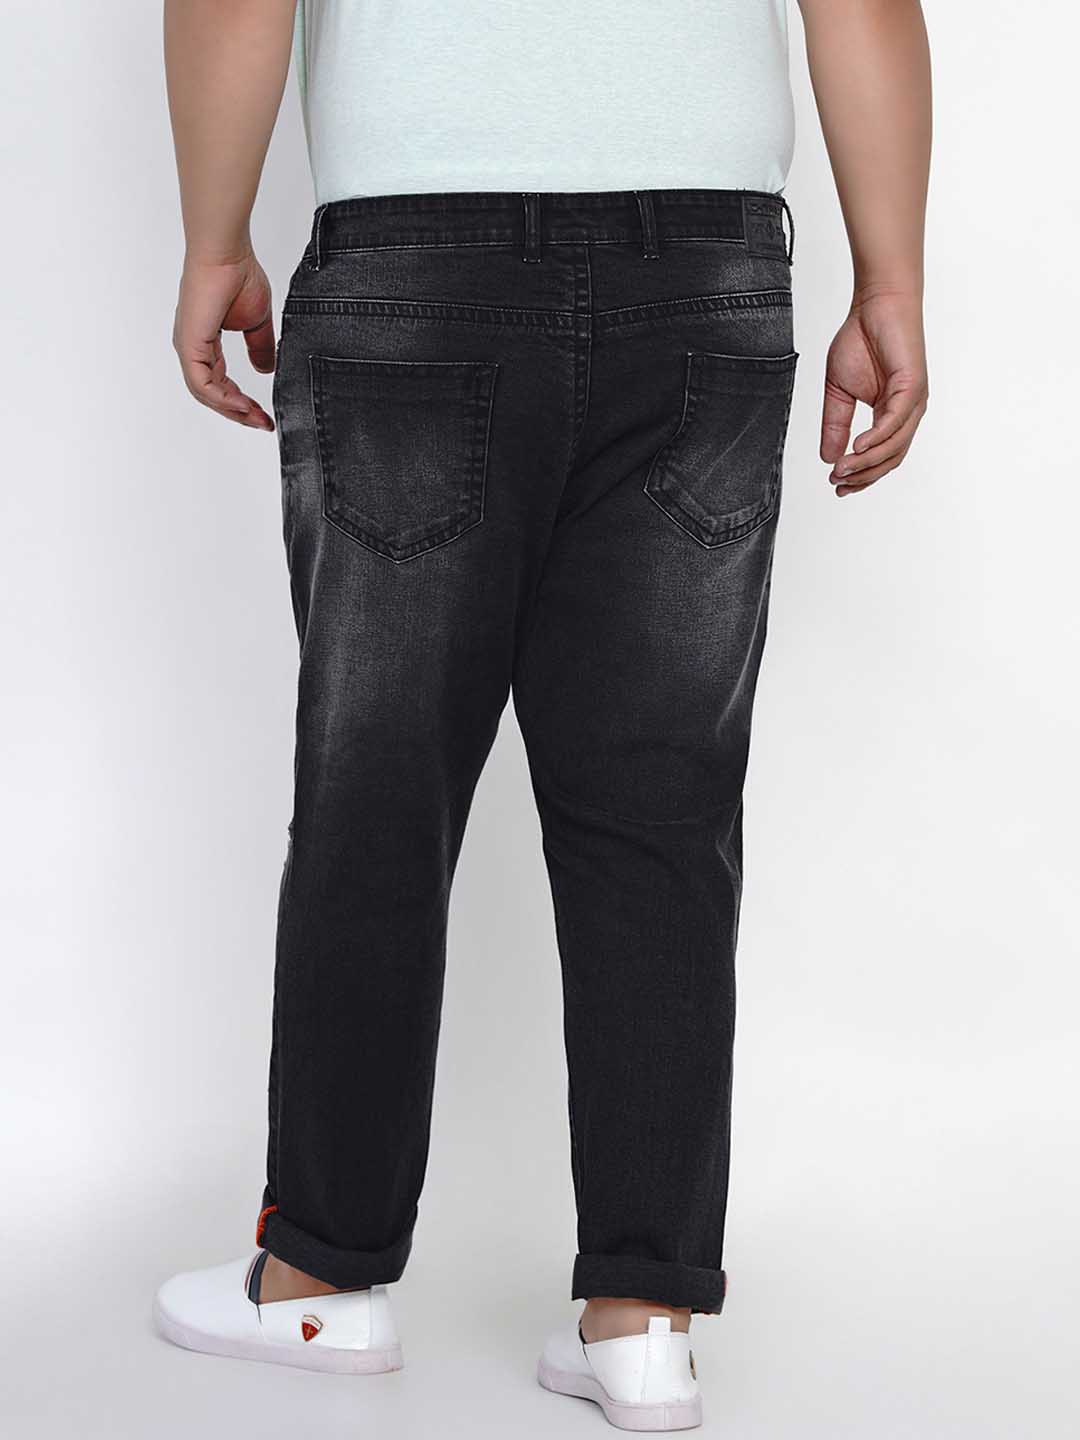 bottomwear/jeans/JPJ1290/jpj1290-3.jpg